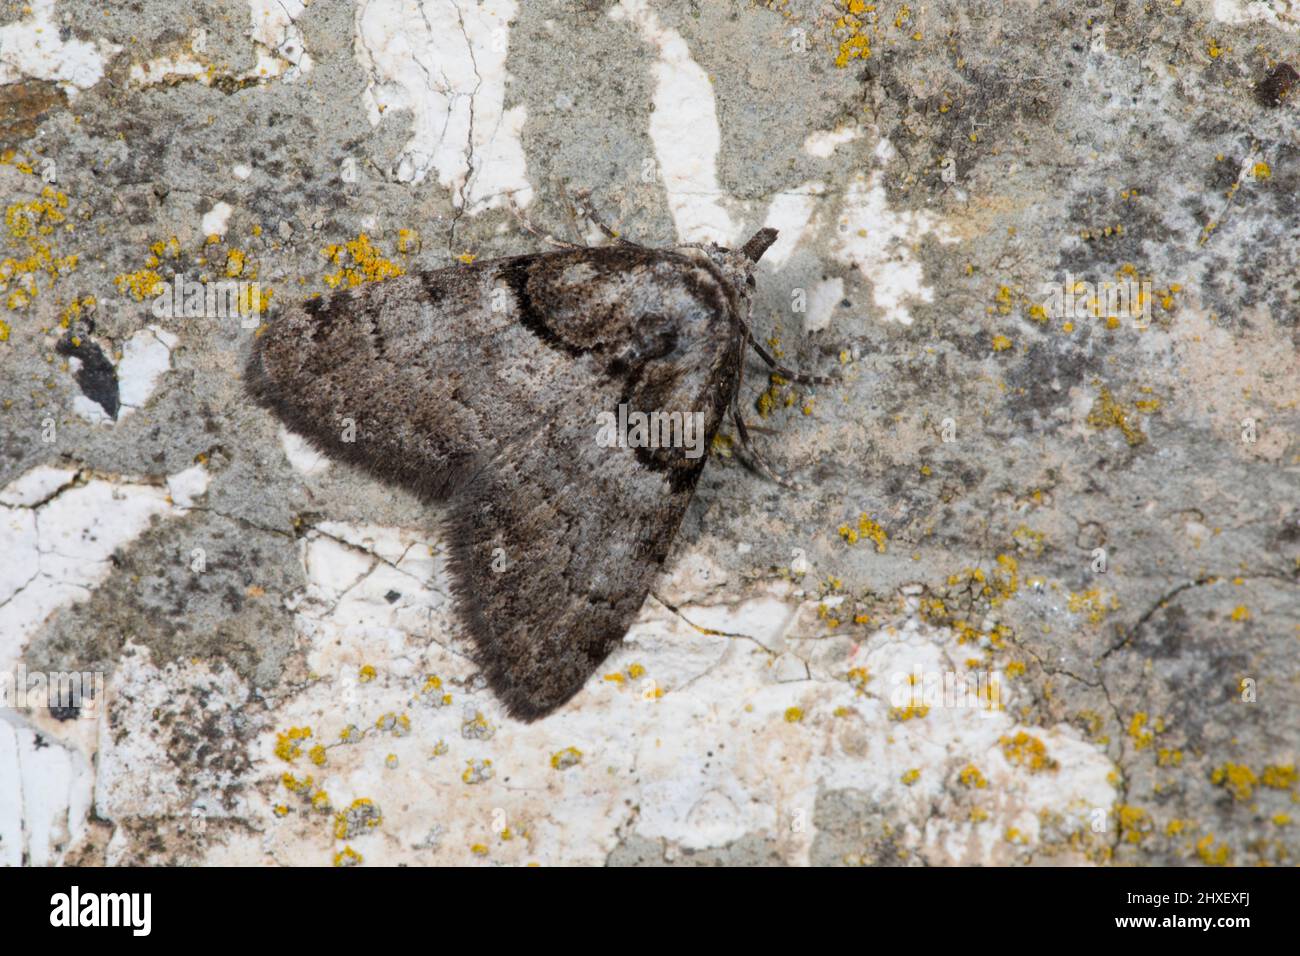 Moth de capa corta (Nola cucullatella) adulto descansando en una pared. Powys, Gales. Julio. Foto de stock